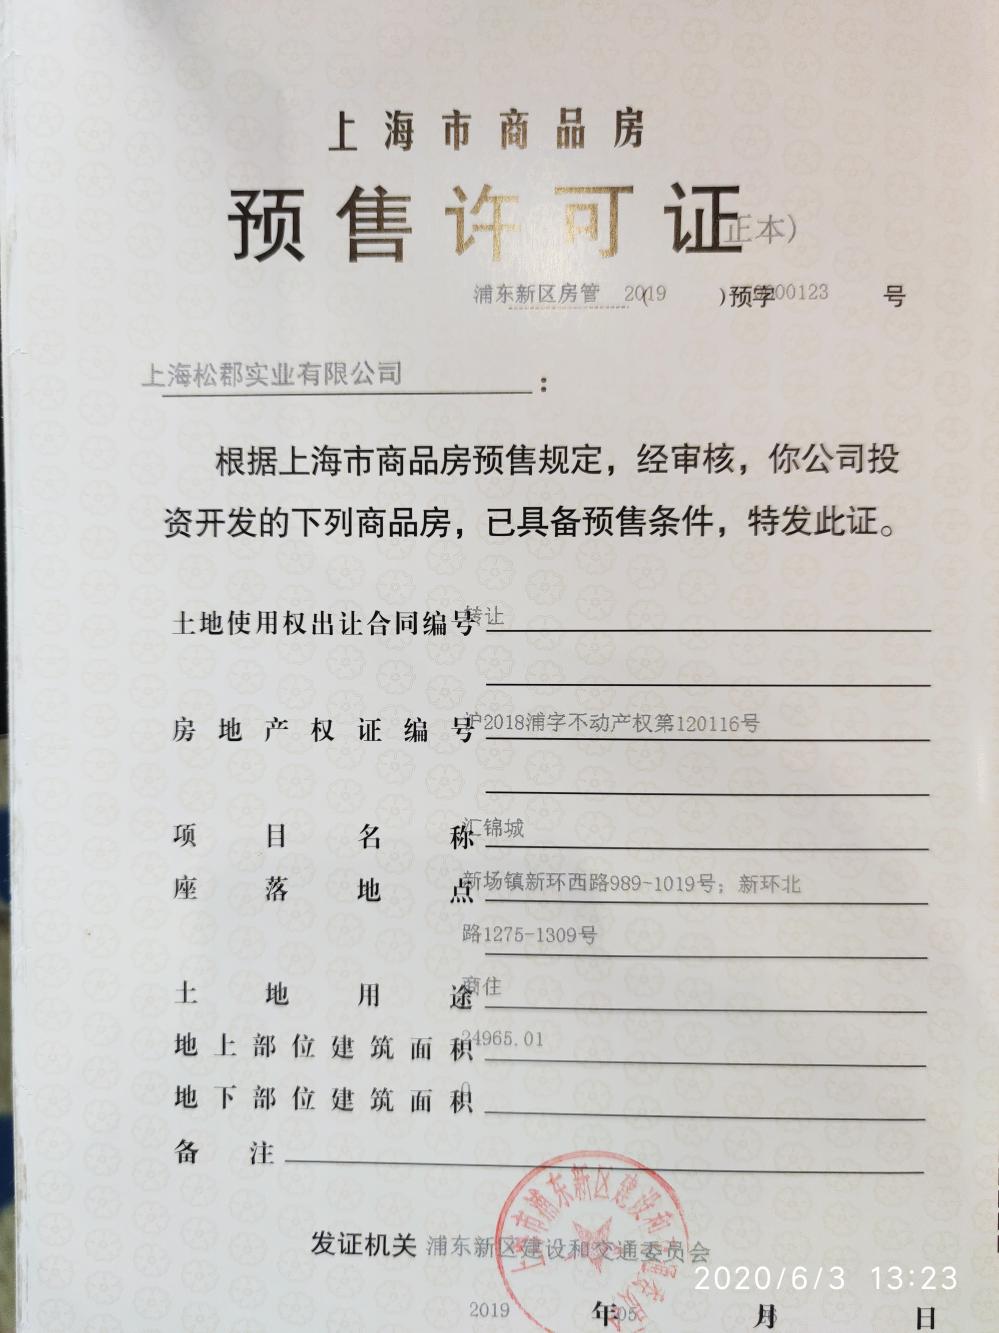 【上海市上海新环广场楼盘】房价,户型,开盘时间详情 预售许可证